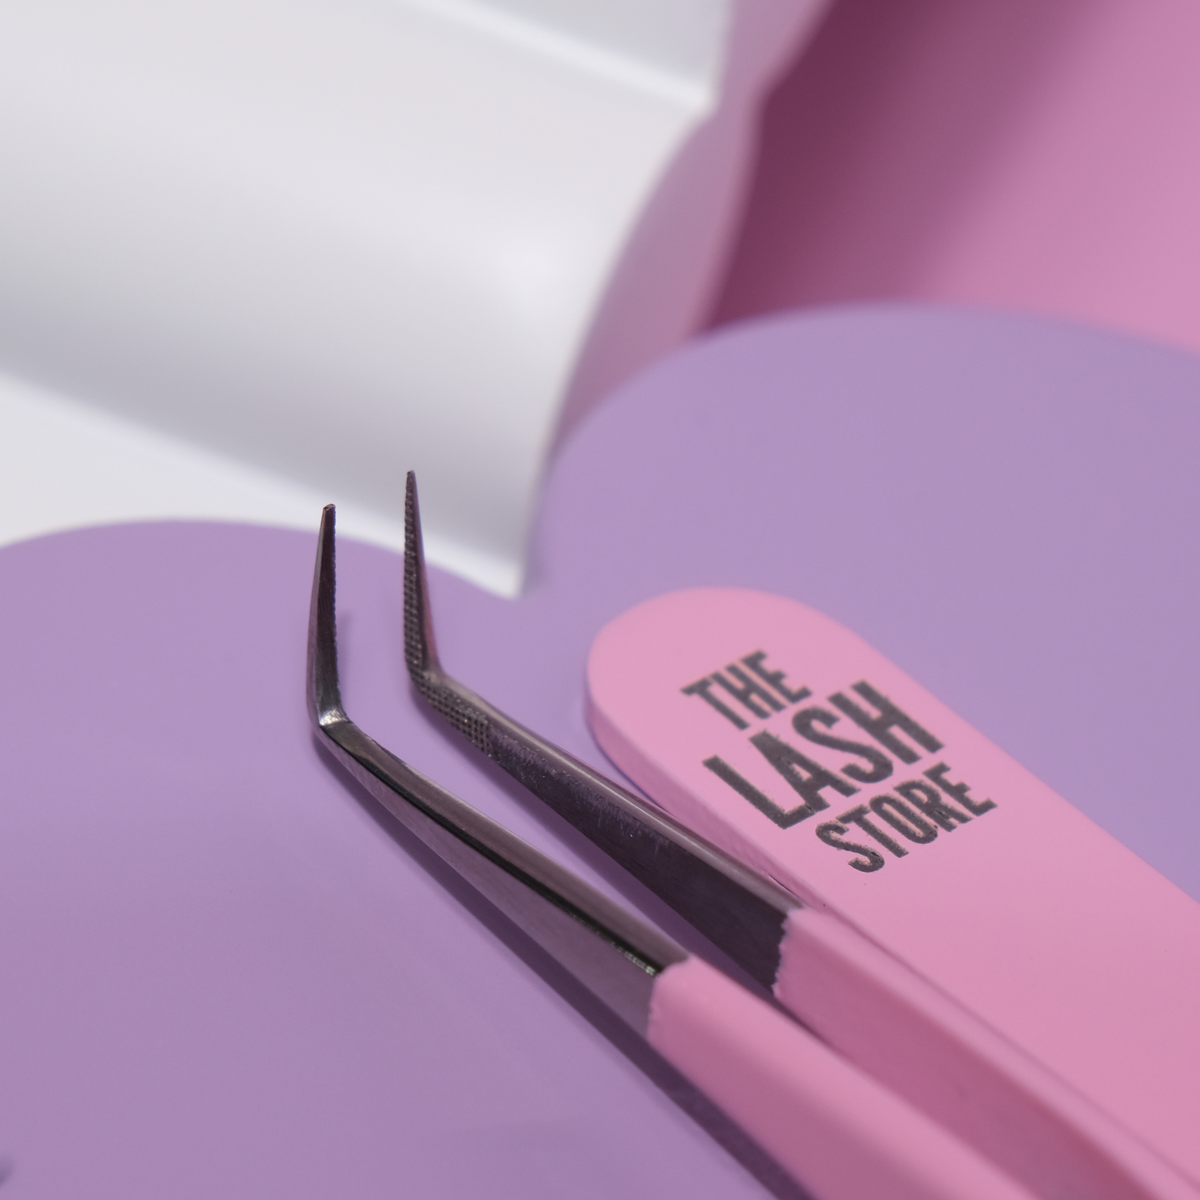 Lash Extension Tweezers - Pink Collection